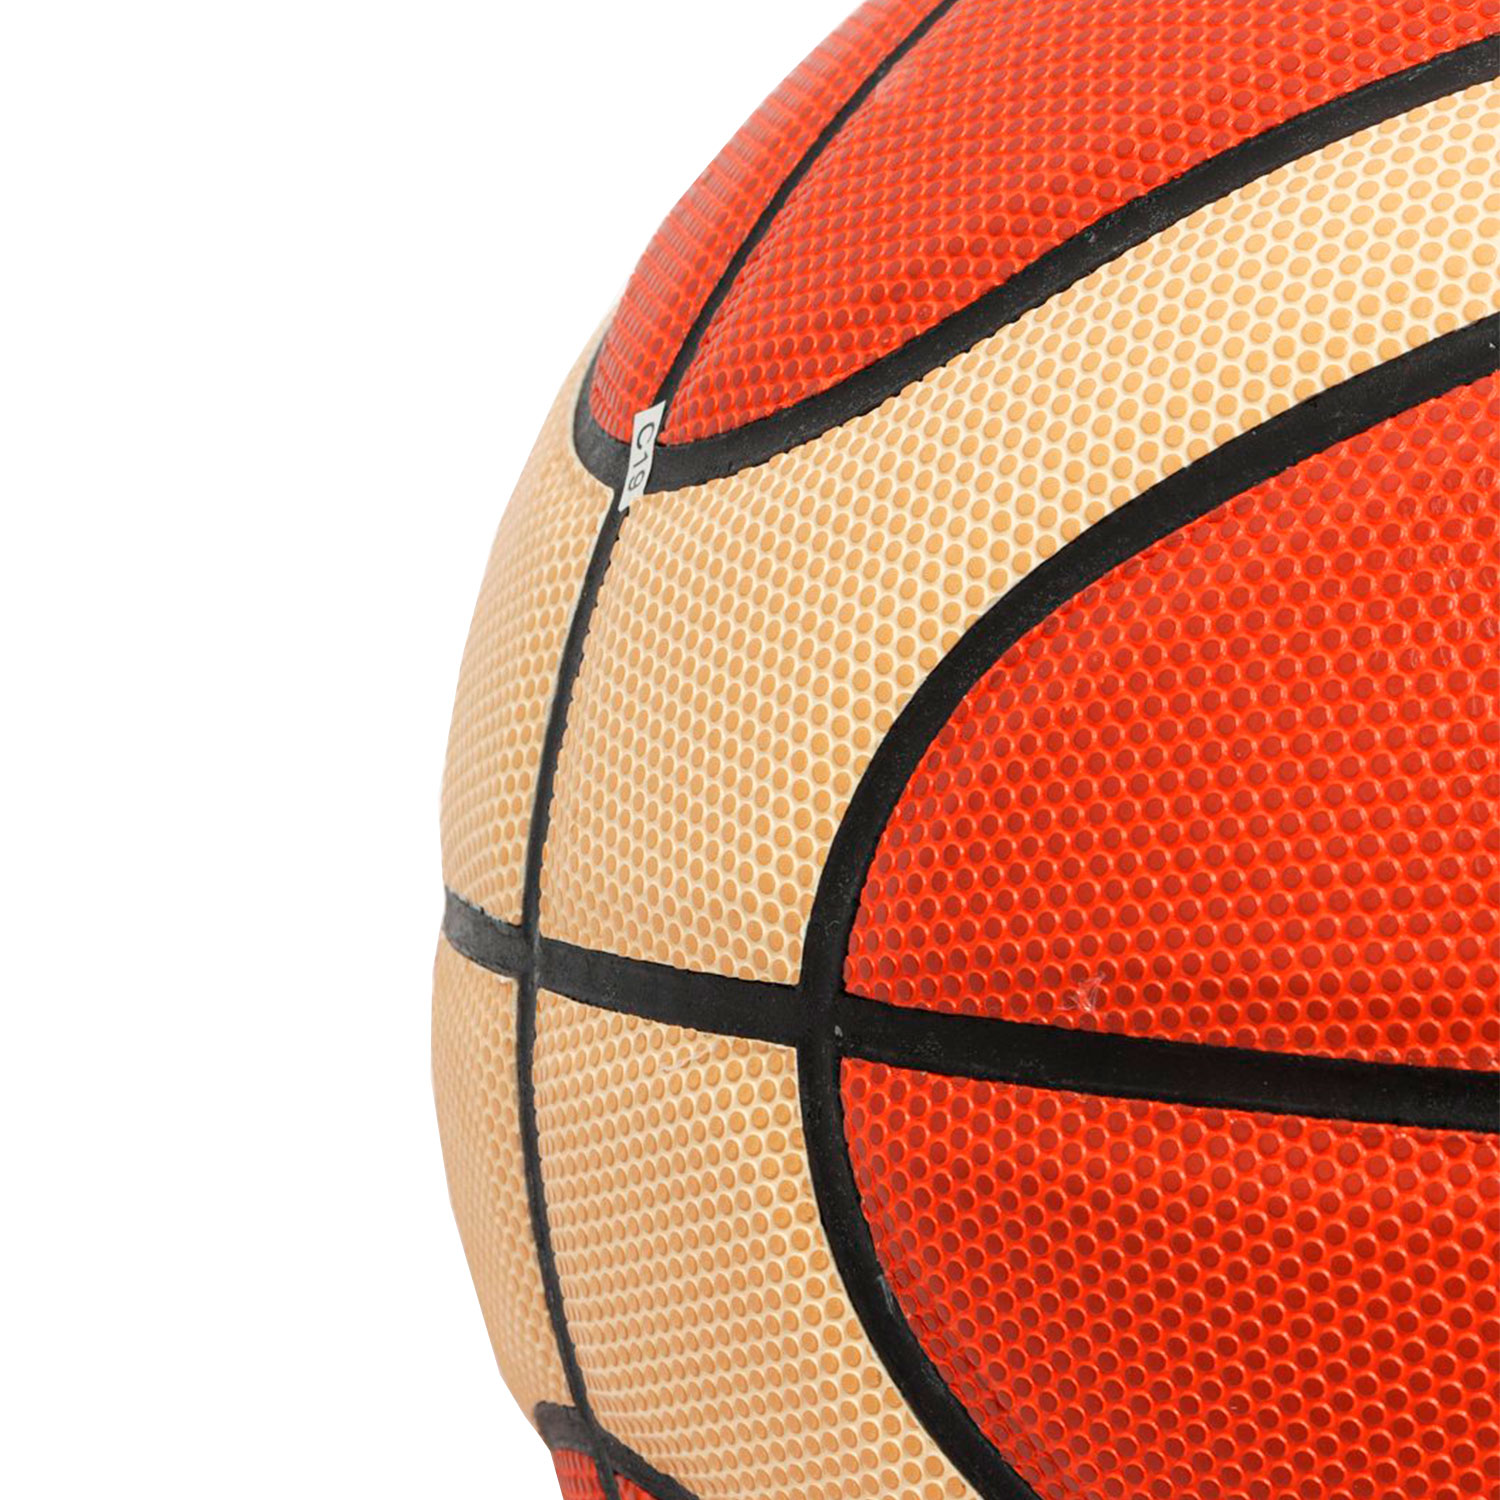 Баскетбольный мяч Molten FIBA